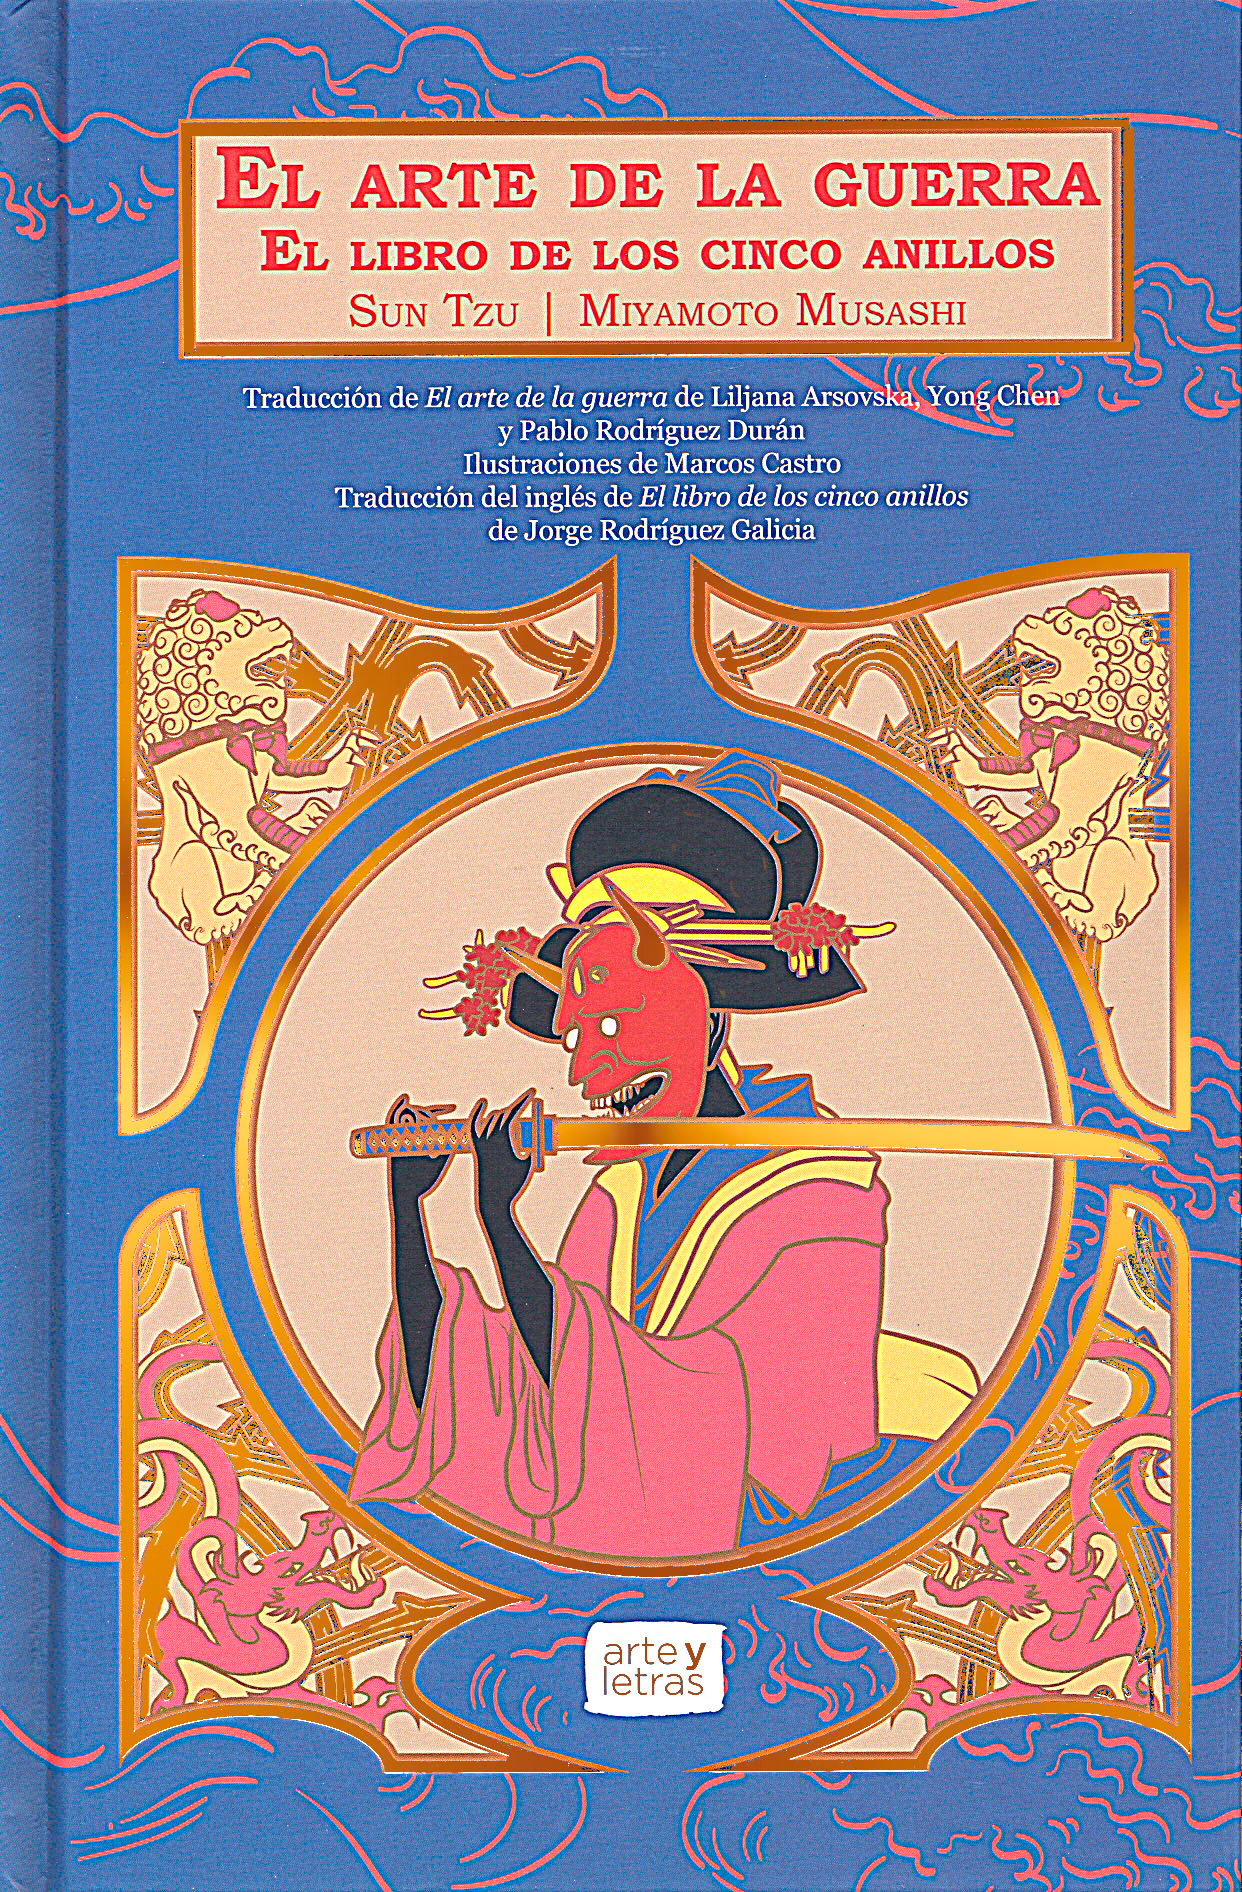 El libro de los cinco anillos - Miyamoto Musashi - E-book - BookBeat